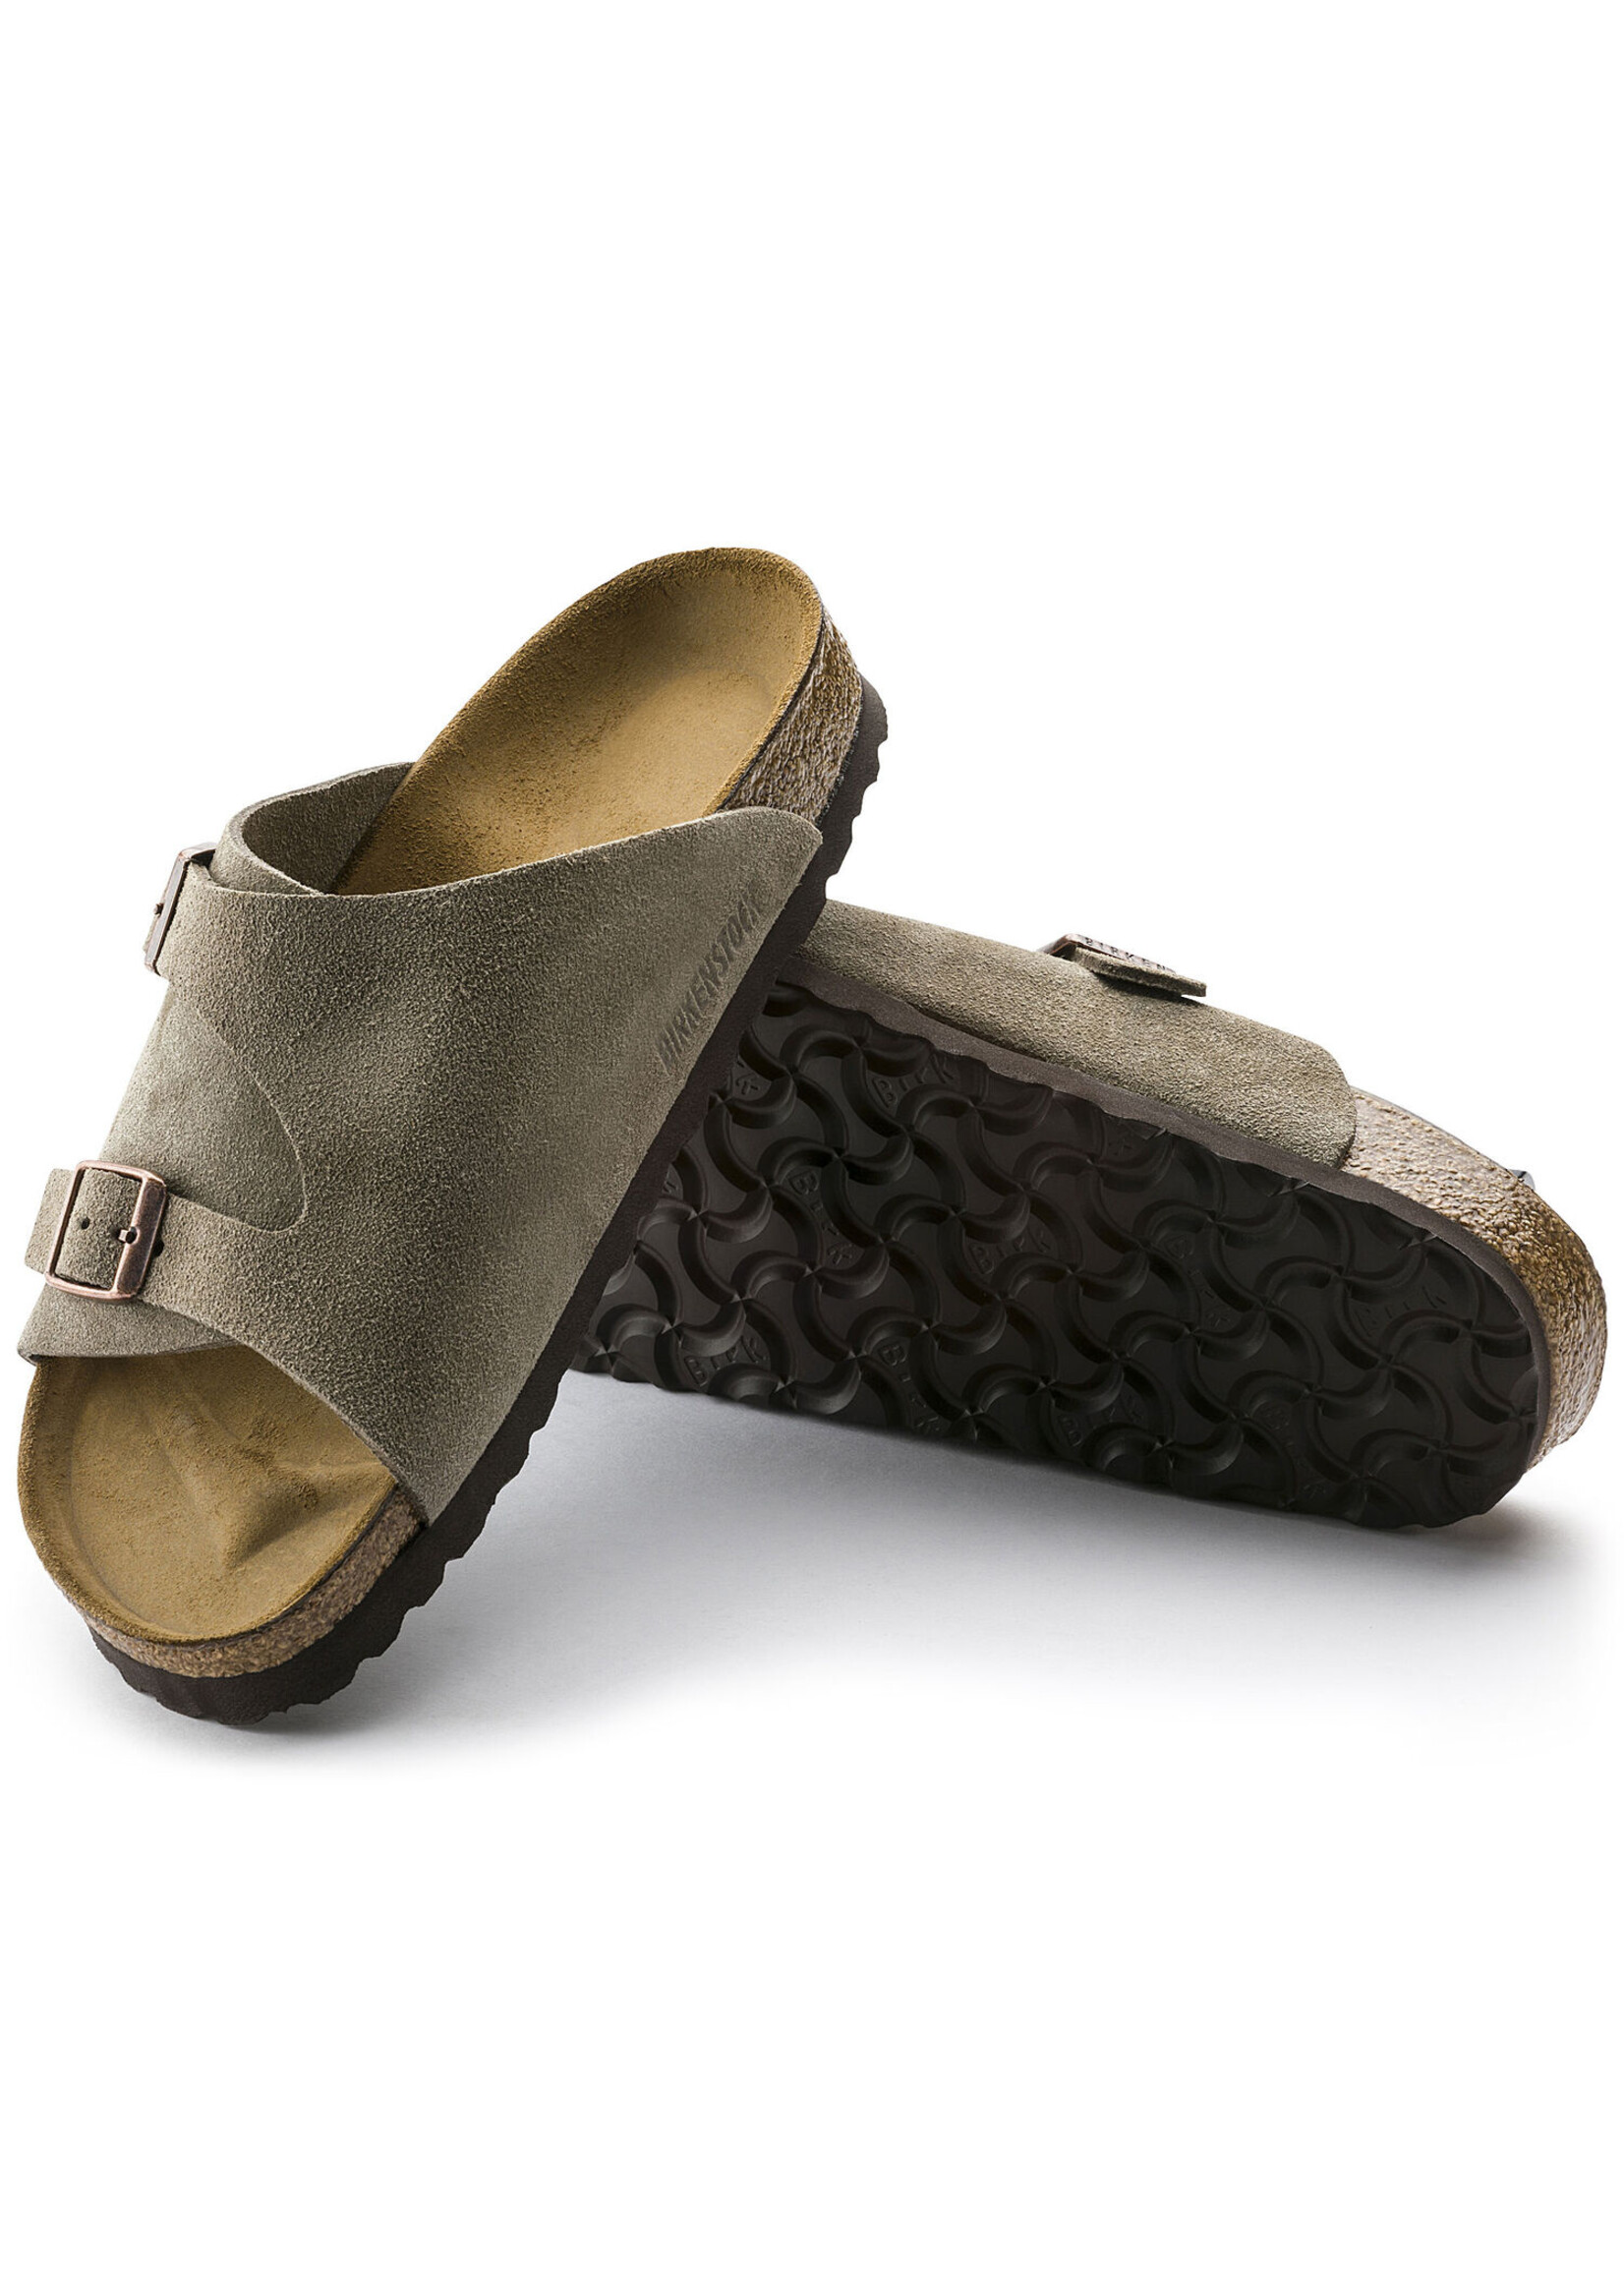 Birkenstock Zurich - Lucha's Comfort Footwear